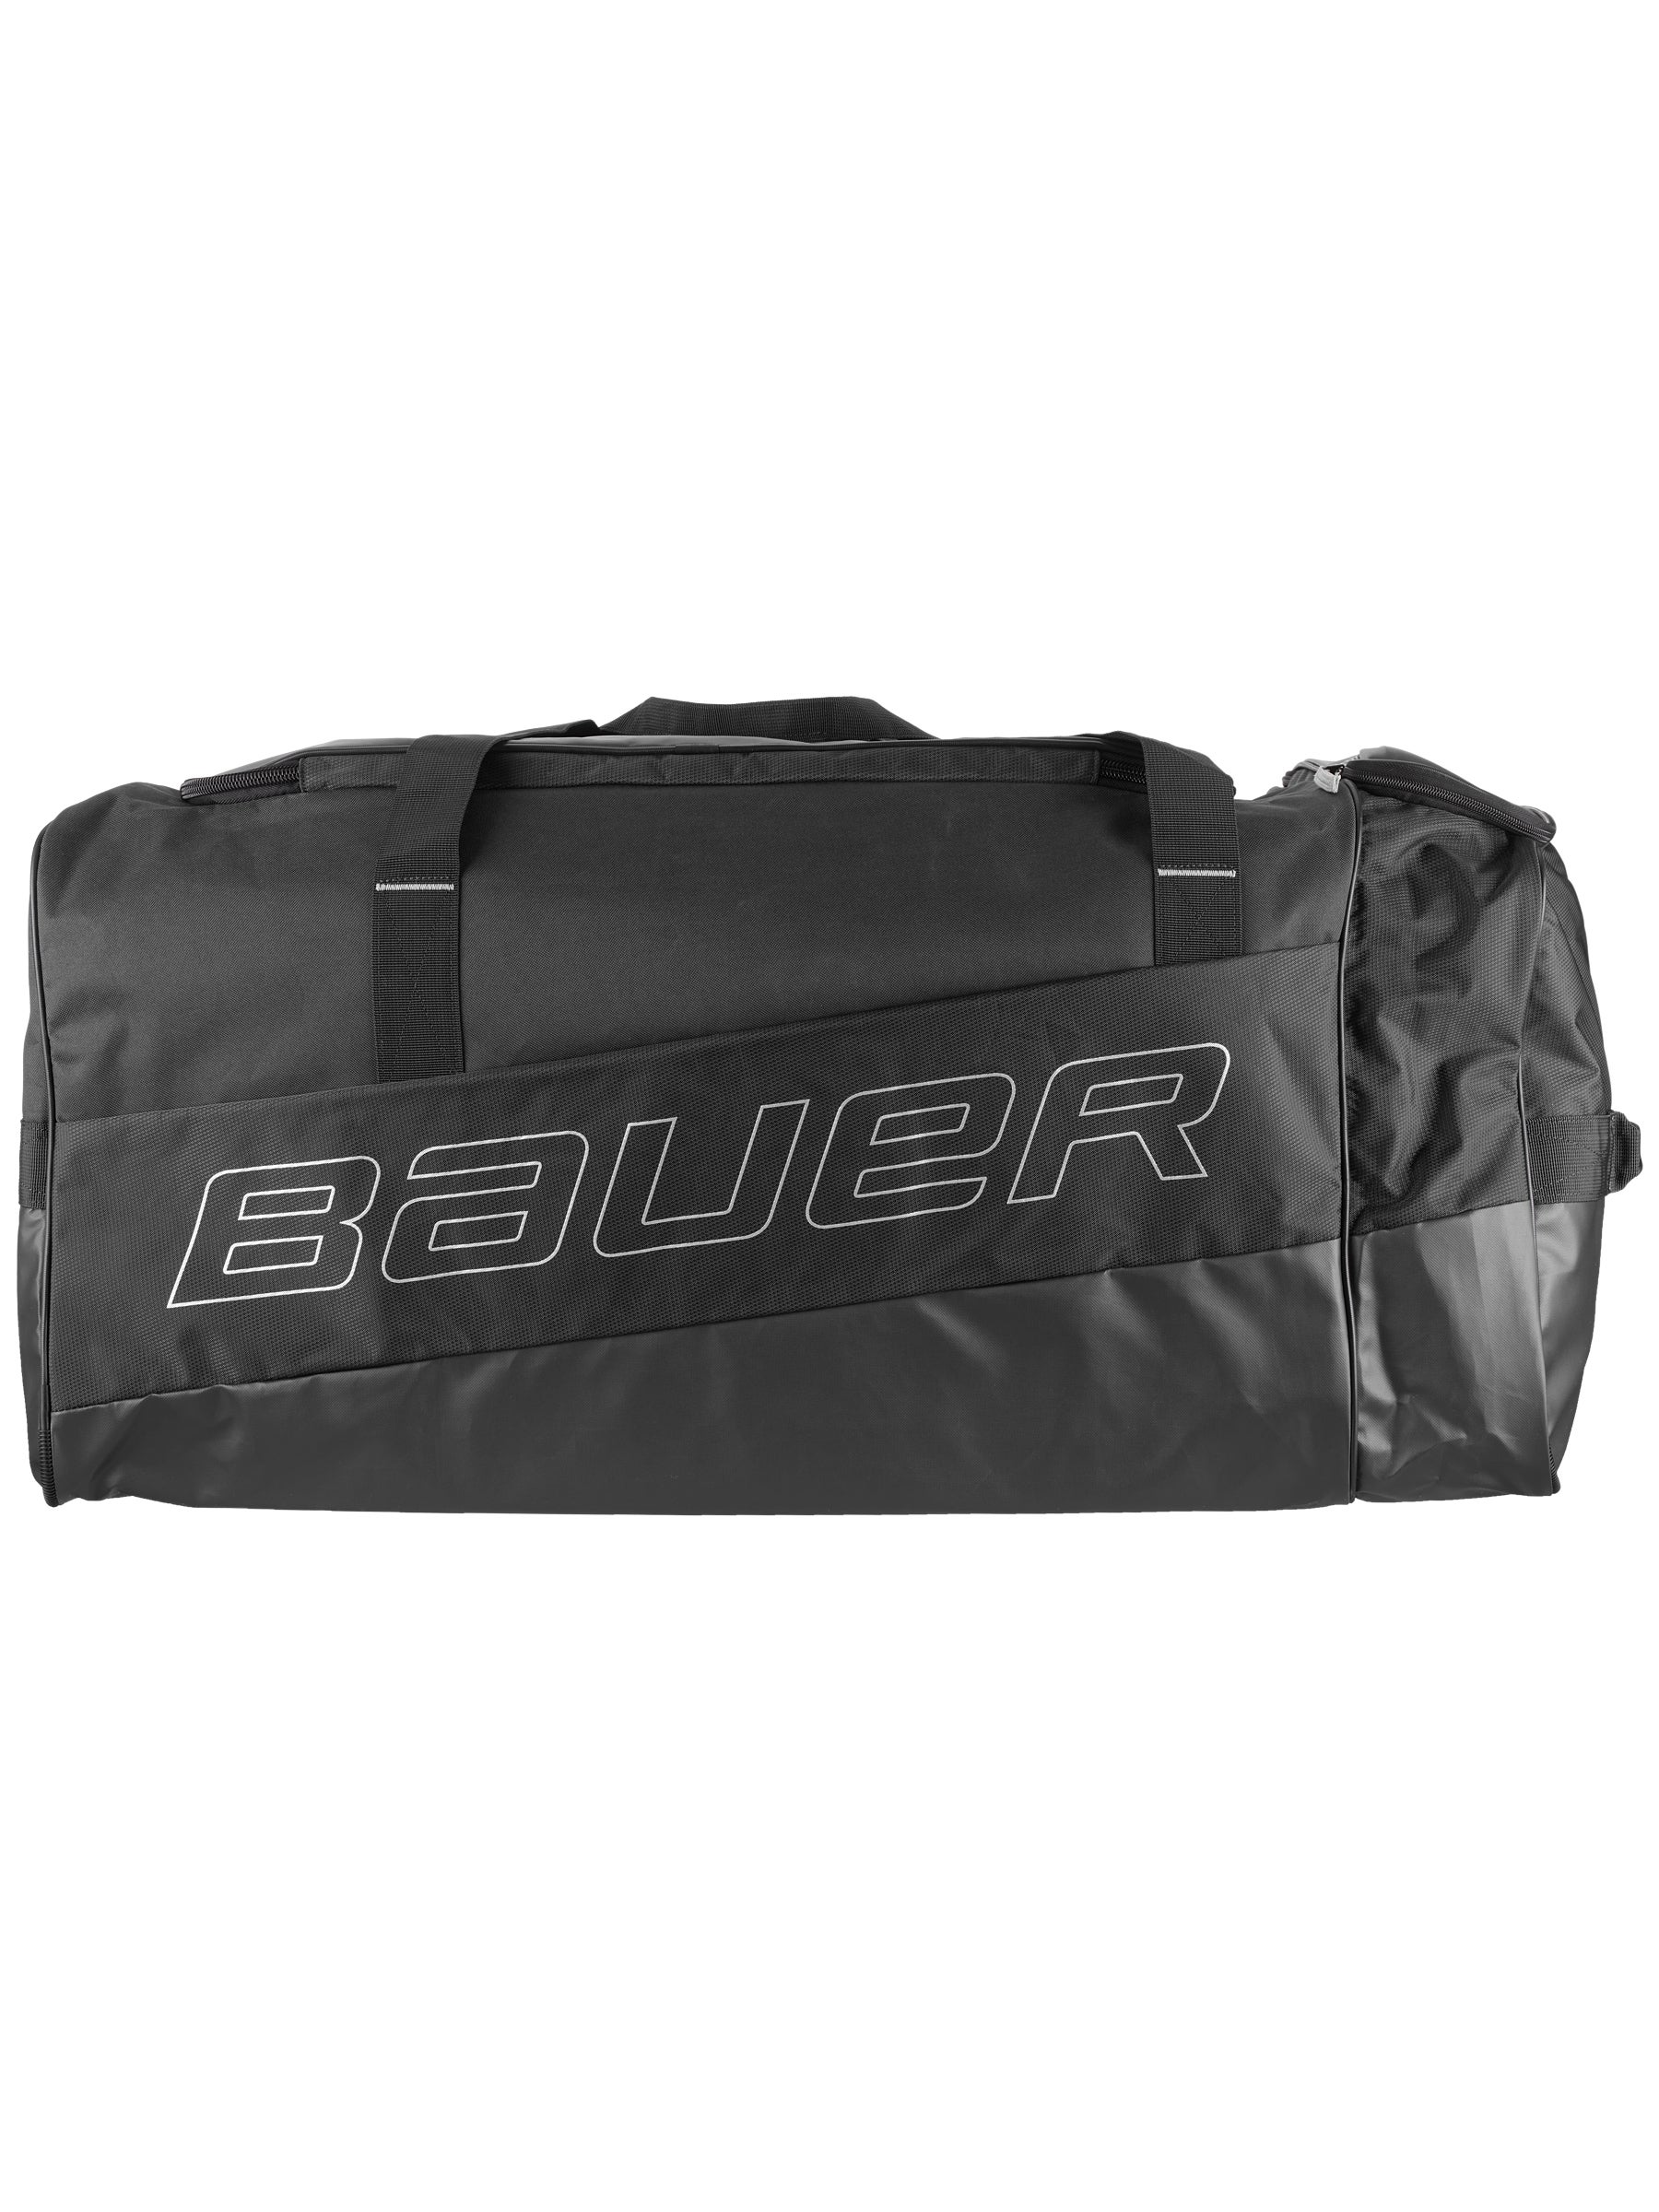 Champro Ebhbl Hockey Carry Bag Black Large for sale online 